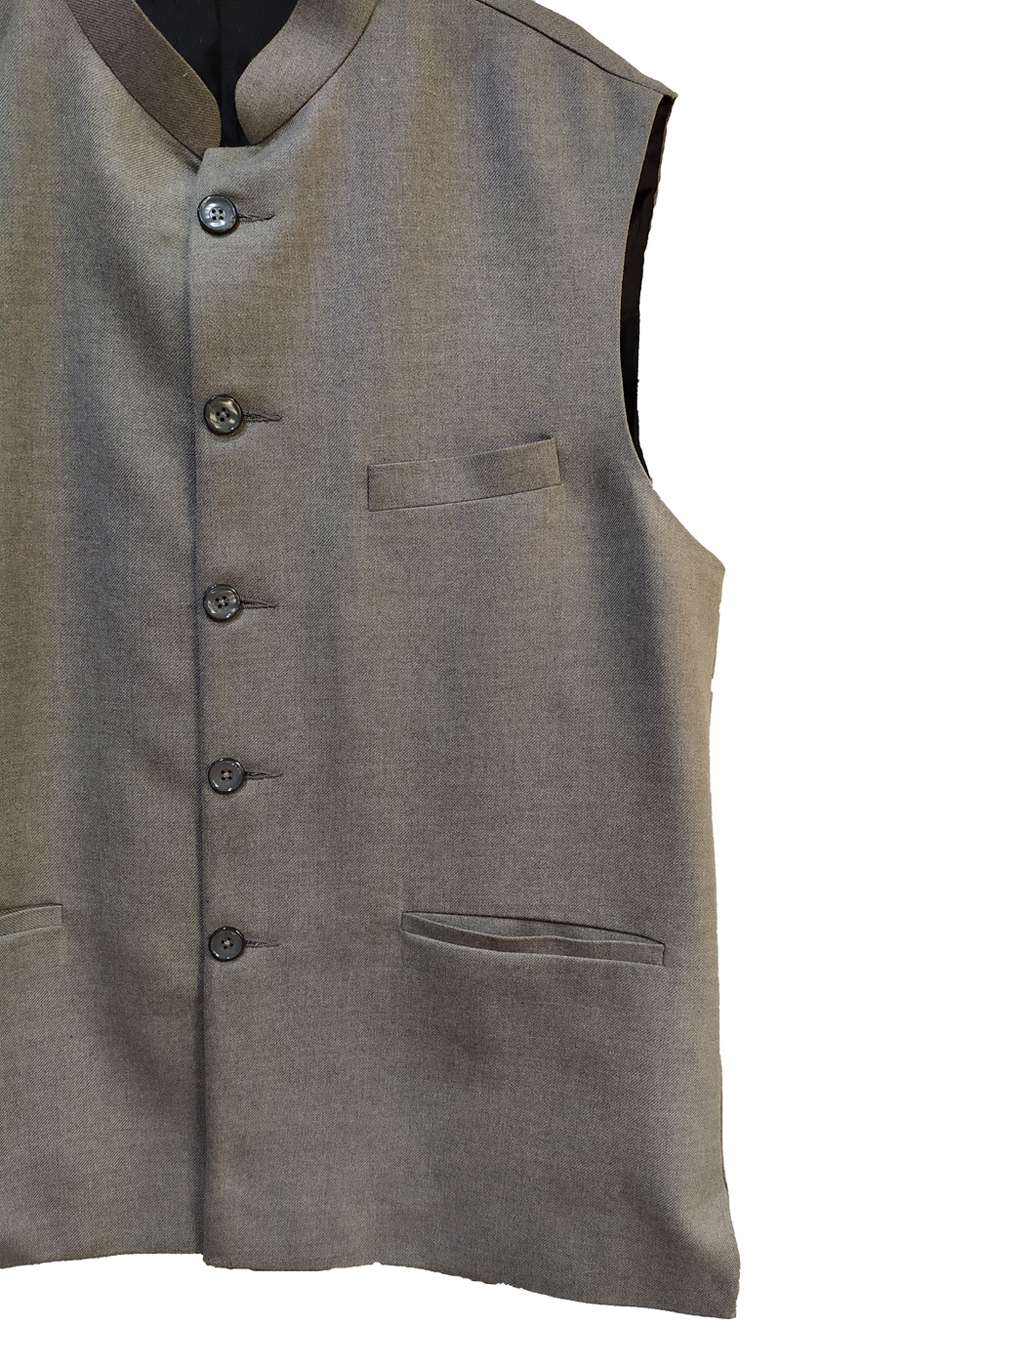 Grey Plus Size Modi Jacket - Plus Size Garments